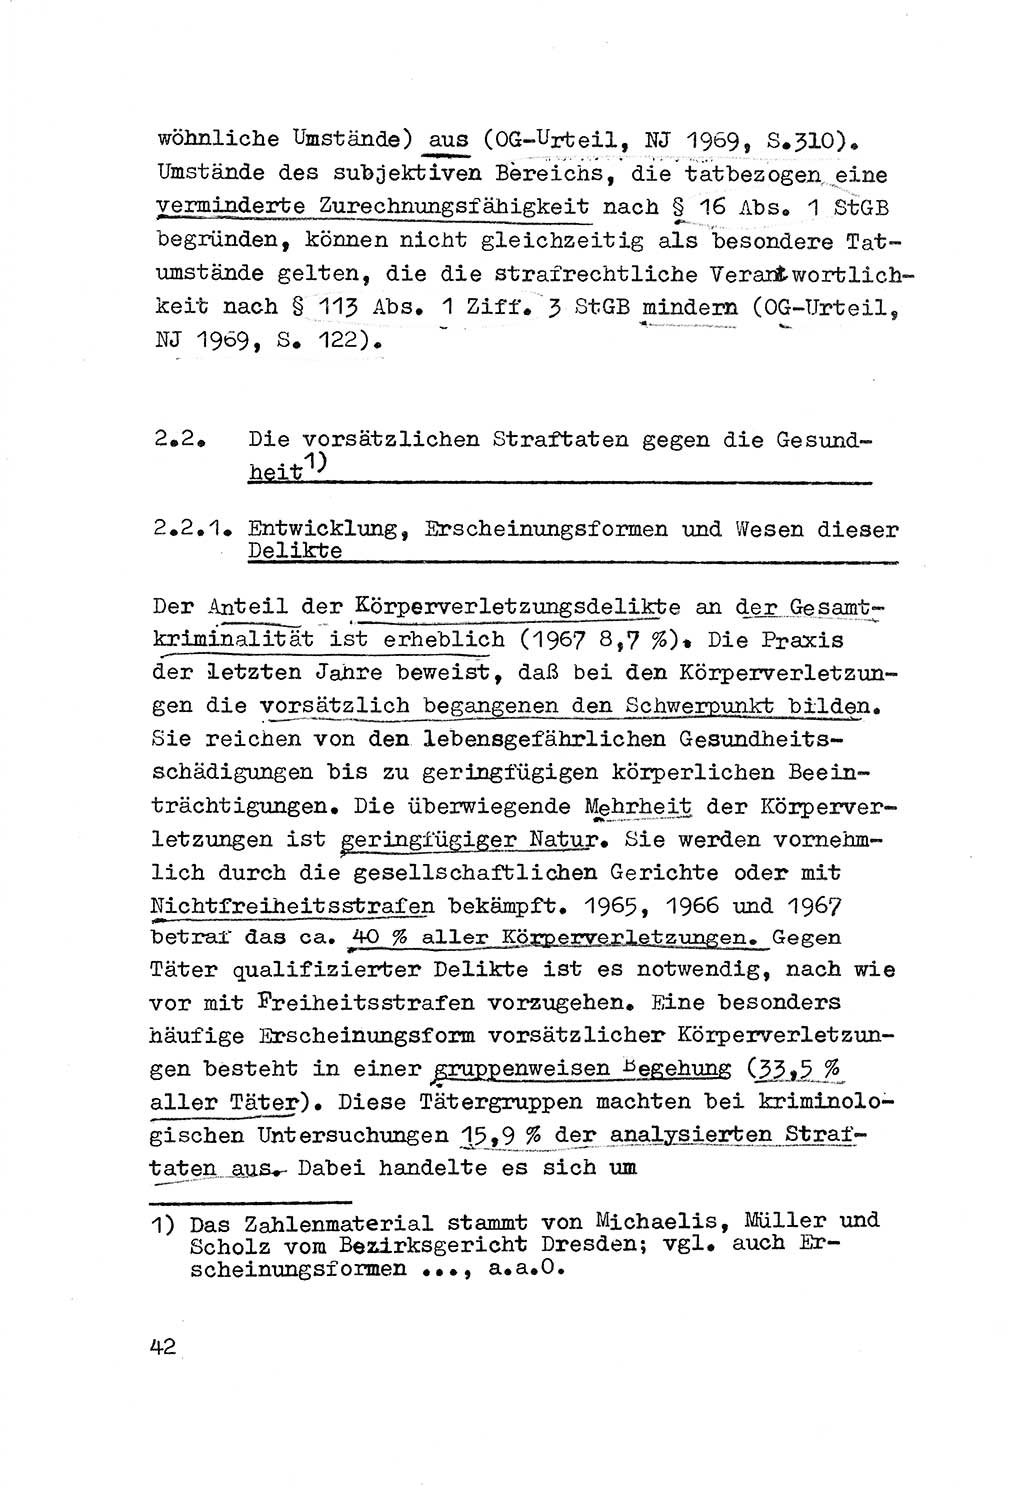 Strafrecht der DDR (Deutsche Demokratische Republik), Besonderer Teil, Lehrmaterial, Heft 3 1969, Seite 42 (Strafr. DDR BT Lehrmat. H. 3 1969, S. 42)